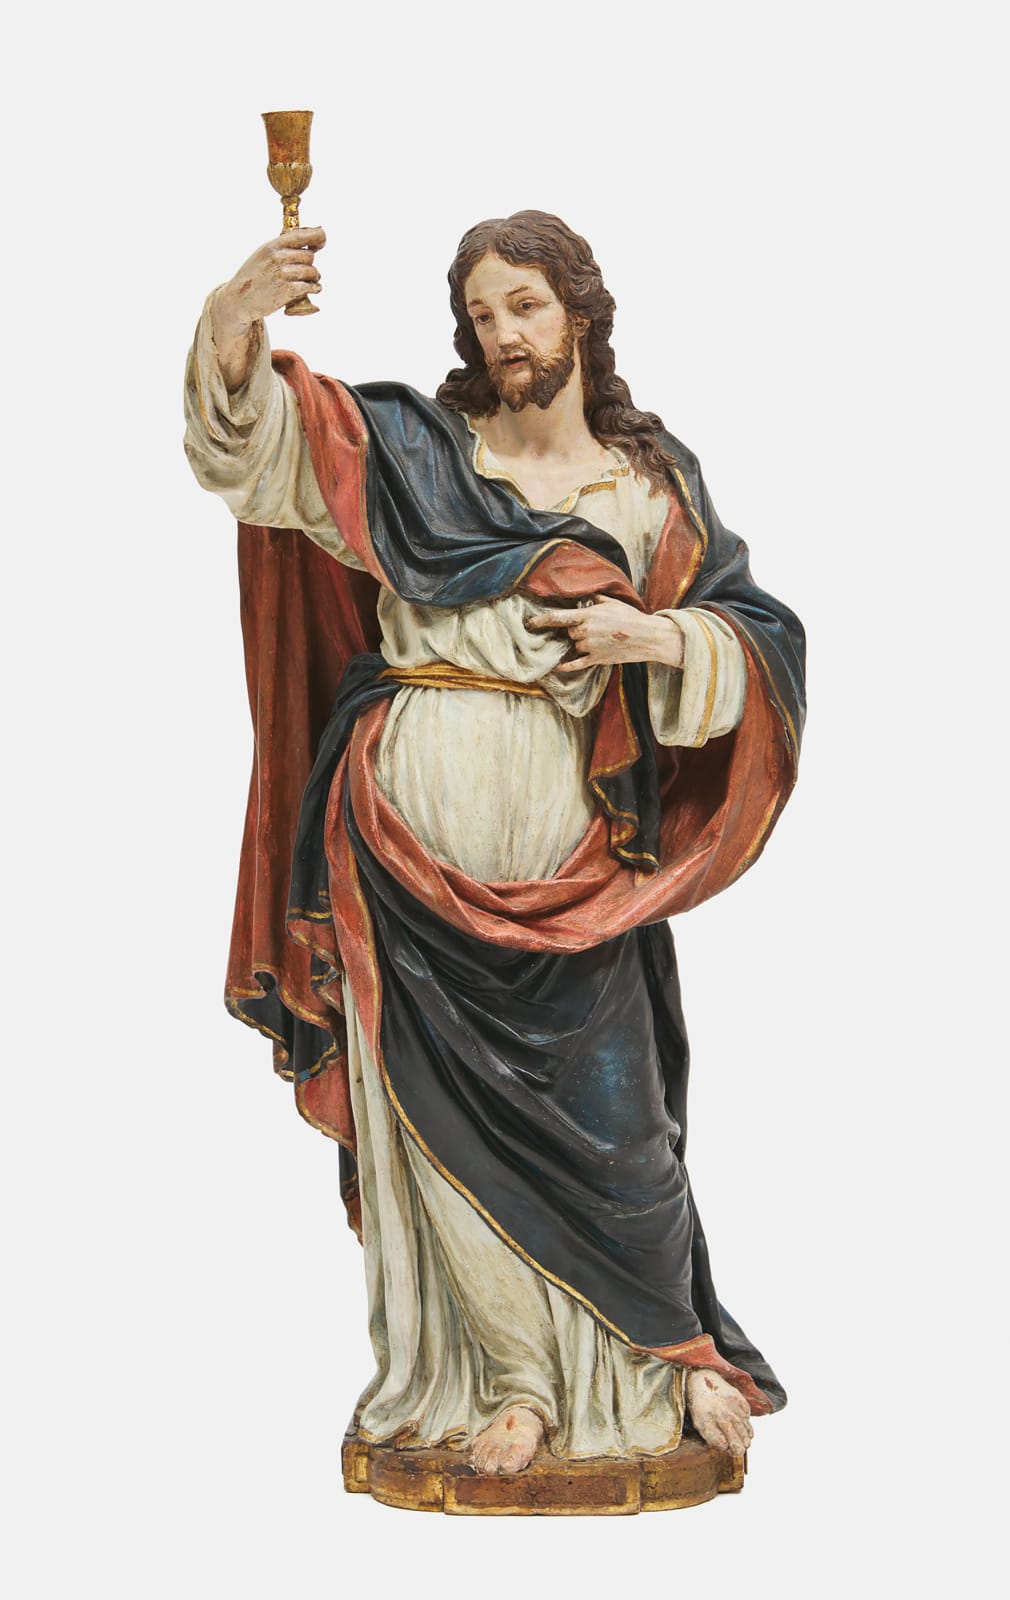 Domenico Antonio Vaccaro (Italian, 1678-1745), Cristo Risorto (Risen Christ), 18th century